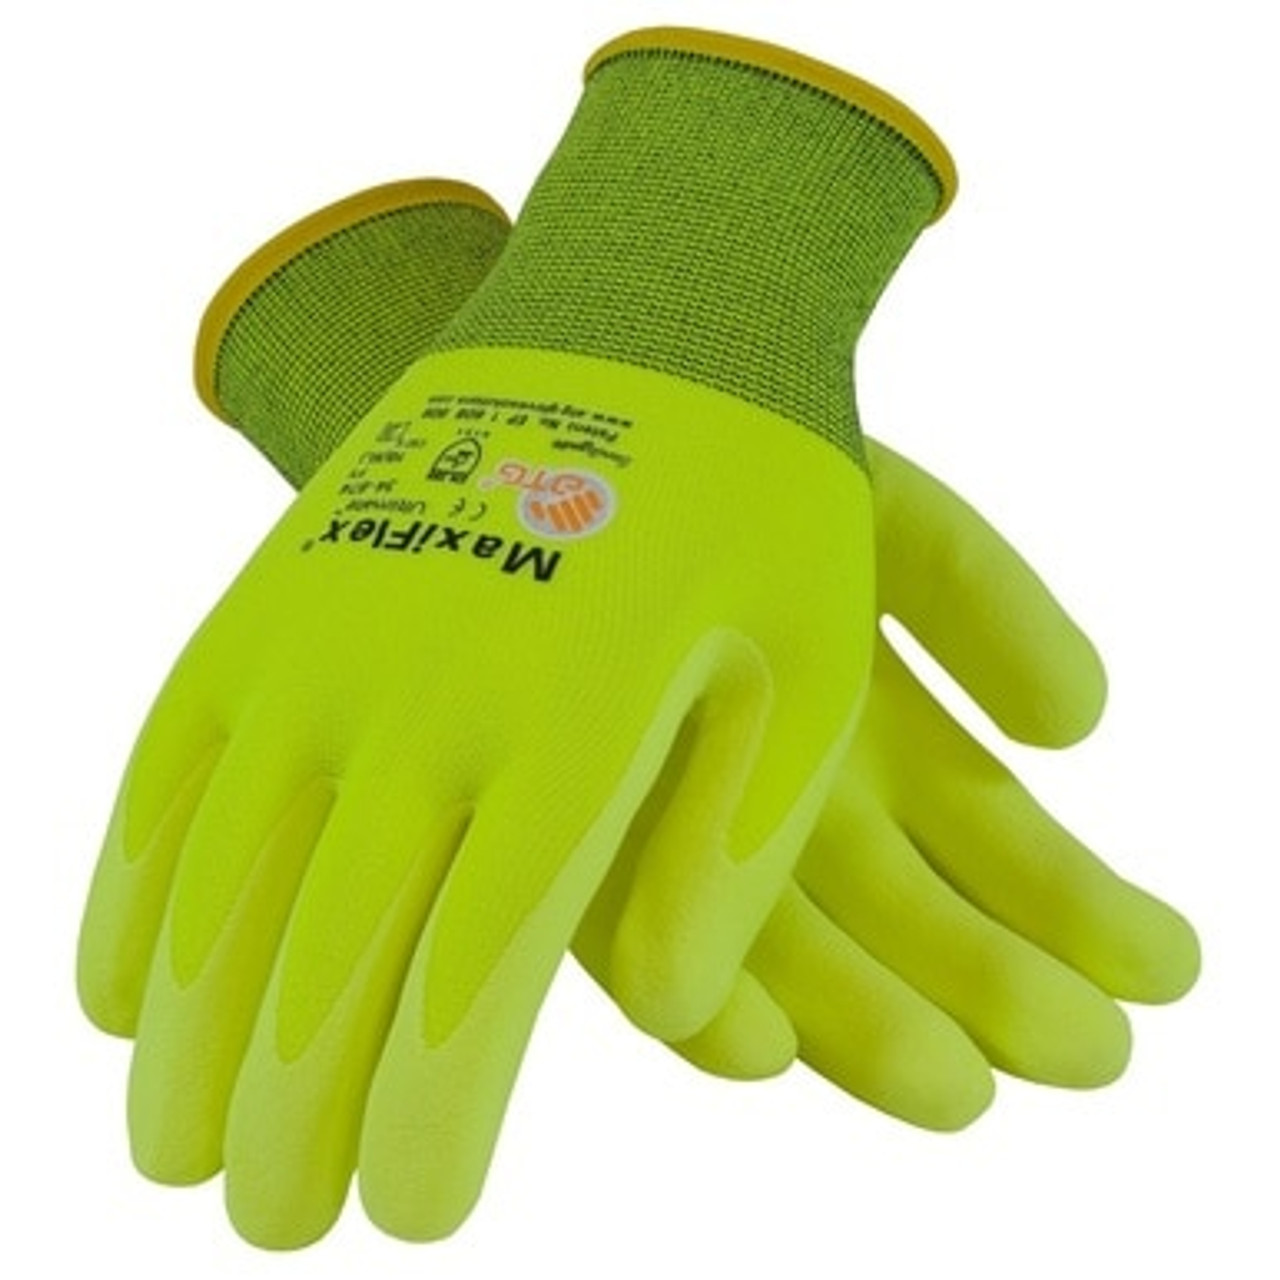 MaxiFlex High-Visibility Micro-Foam Glove 34-874FY (12 pairs)